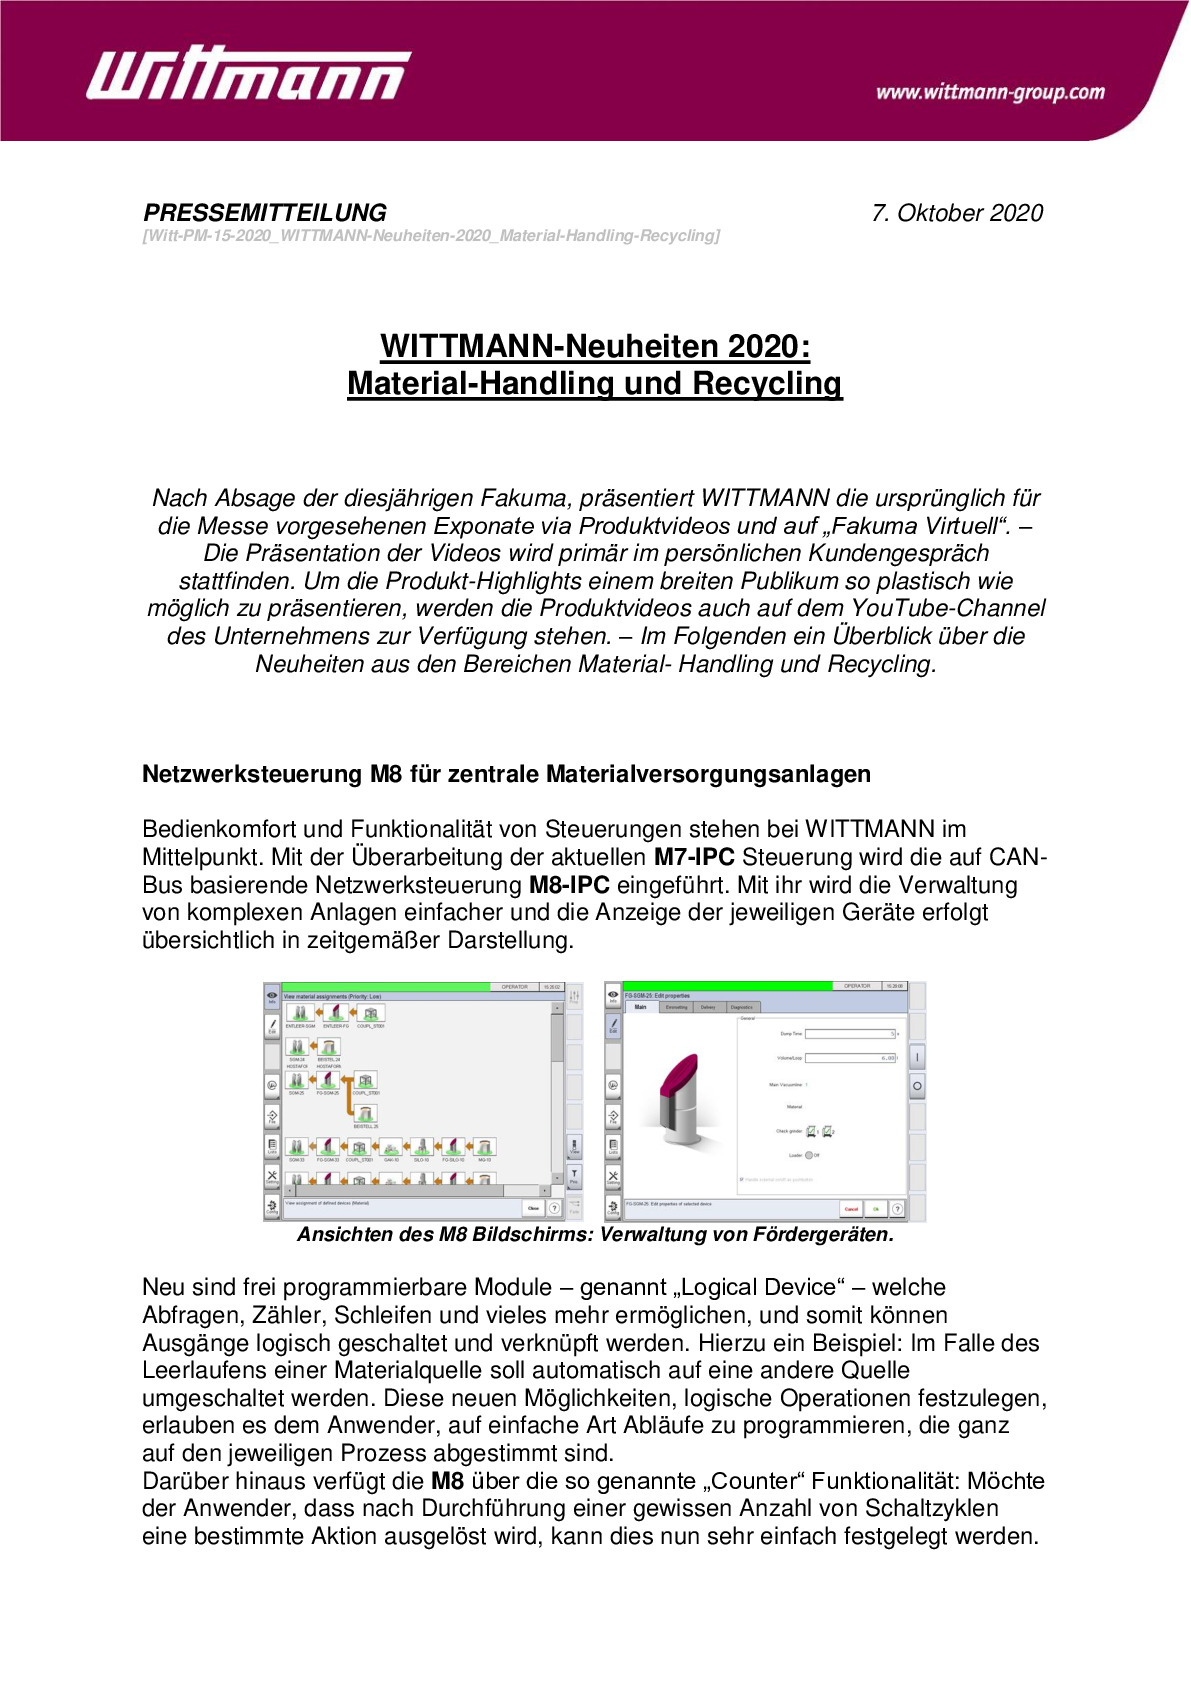 witt-pm-15-2020_wittmann-neuheiten-2020_material-handling-recycling_01_0